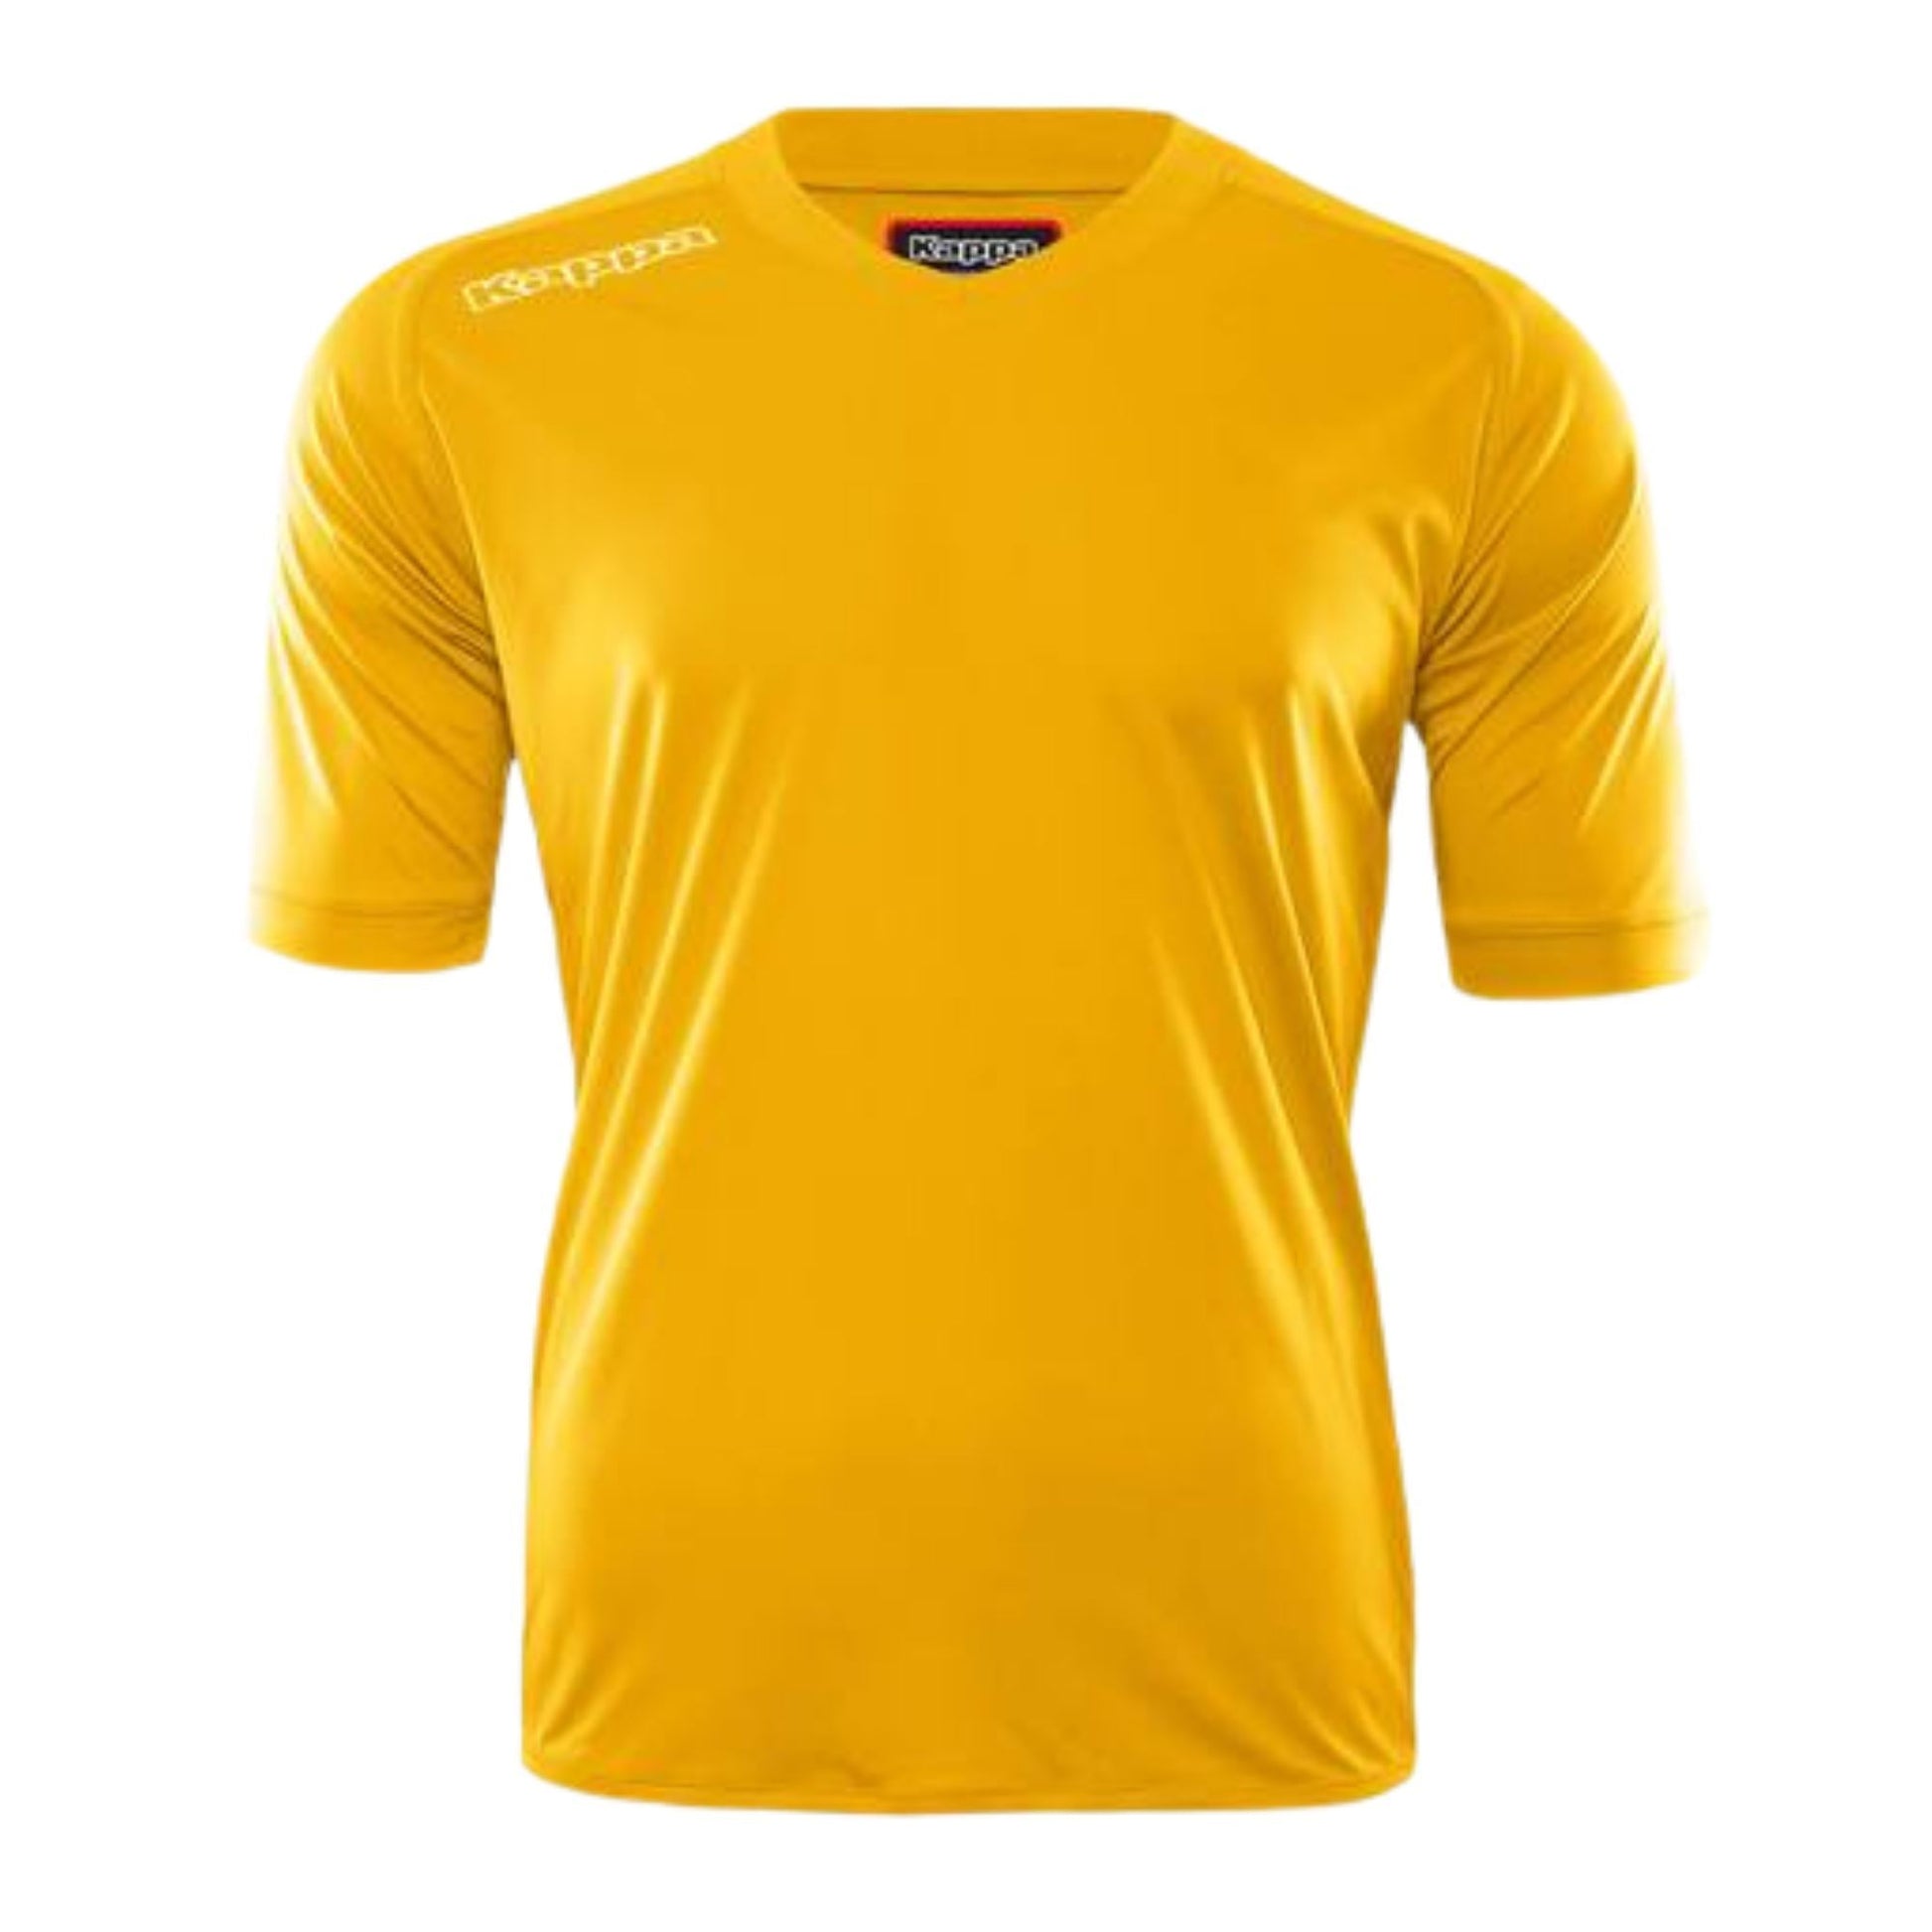 Kappa Short Sleeve Jersey Youth Yellow Shirts & Tops KAPPA 6 YELLOW 